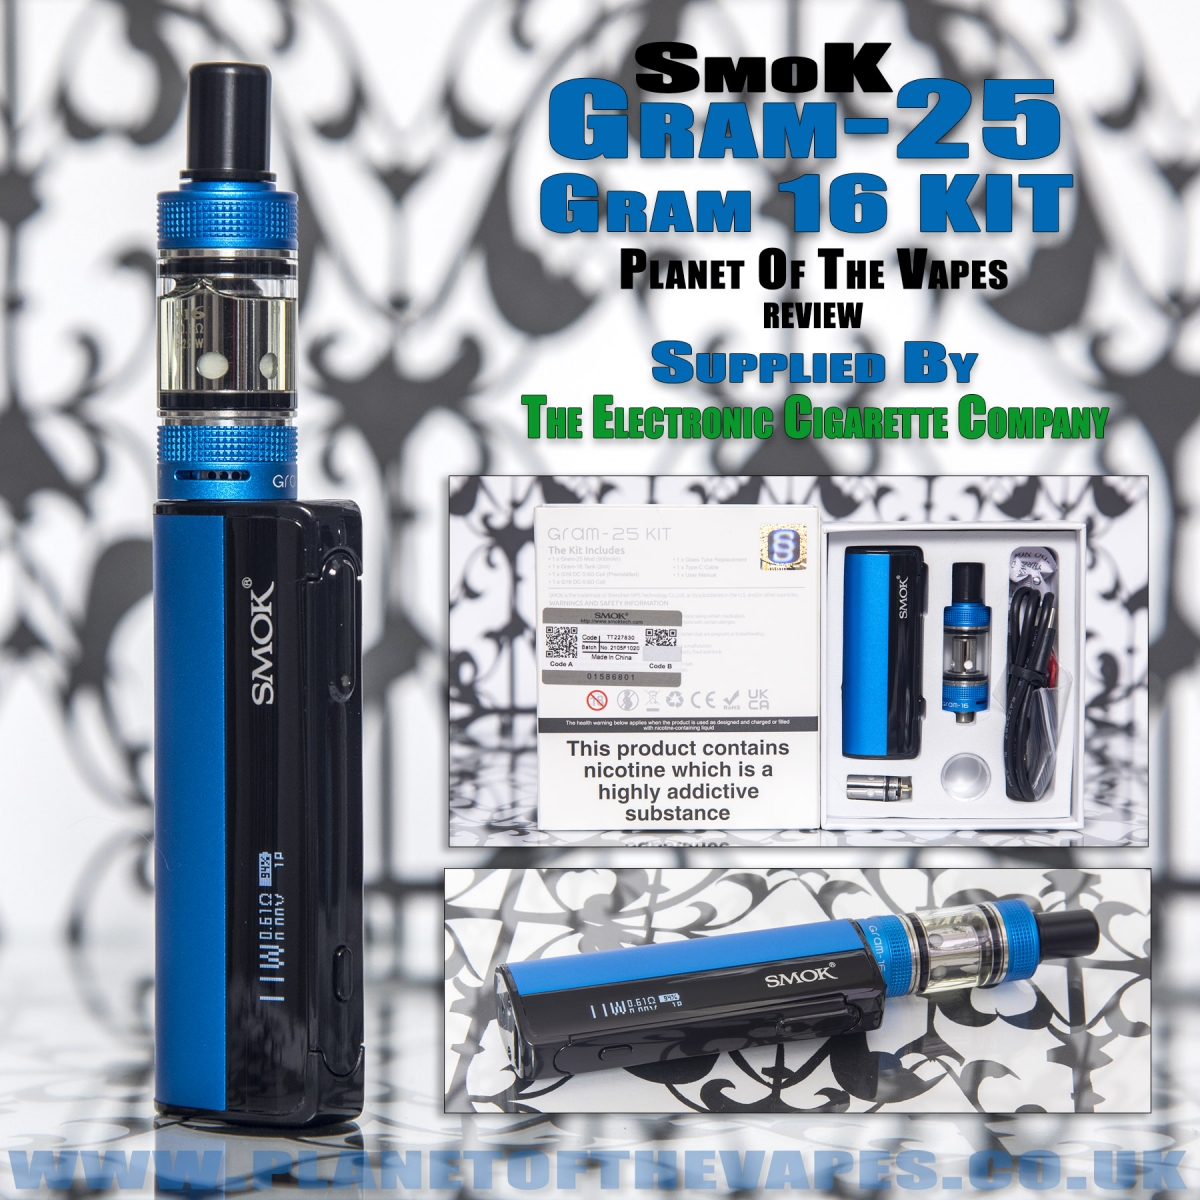 Smok Gram-25 review